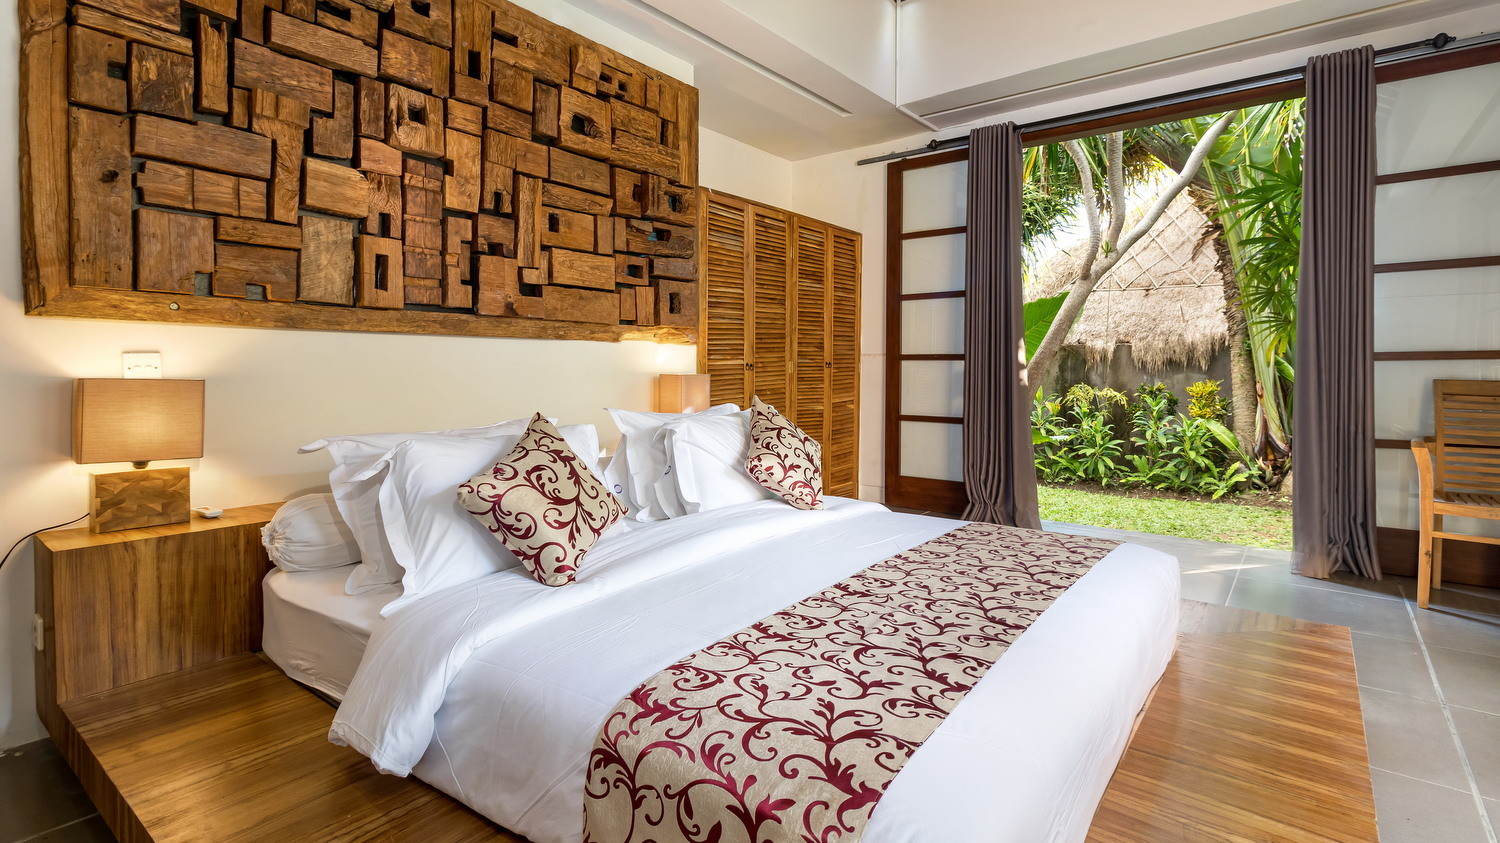 Villa Arte in Seminyak, Bali (5 bedrooms) - Best Price & Reviews!